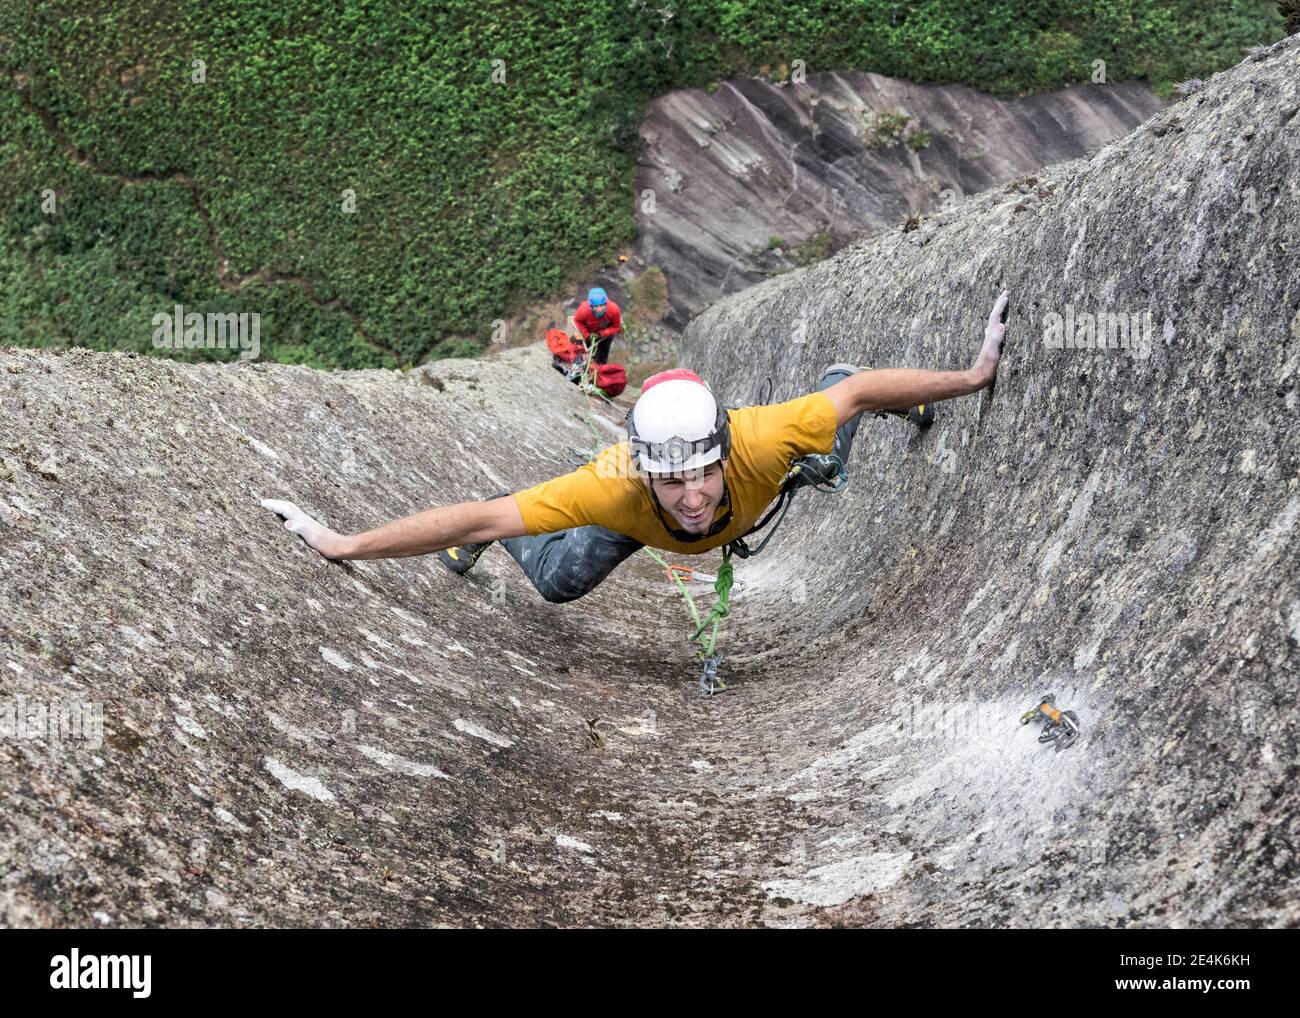 Macho escalador de roca desafiando pared escarpada de Pedra Baiana Foto de stock